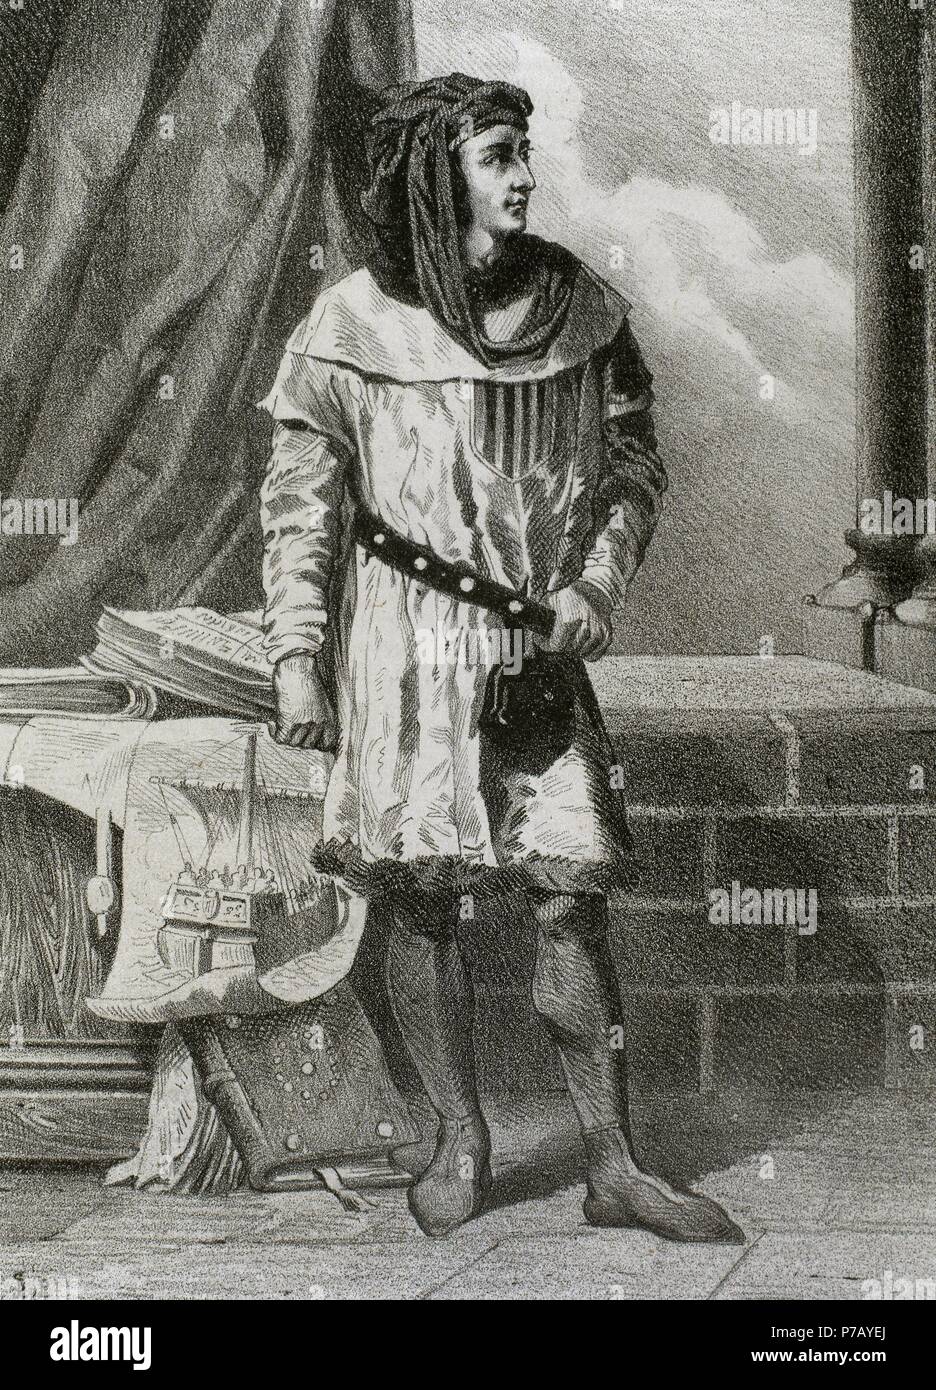 Jakob II. (1267-1327), genannt das gerechte. König von Aragon, Sizilien und Graf von Barcelona, Valencia, Sardinien und Corsica. Porträt. Kupferstich, 19. Jahrhundert. Stockfoto